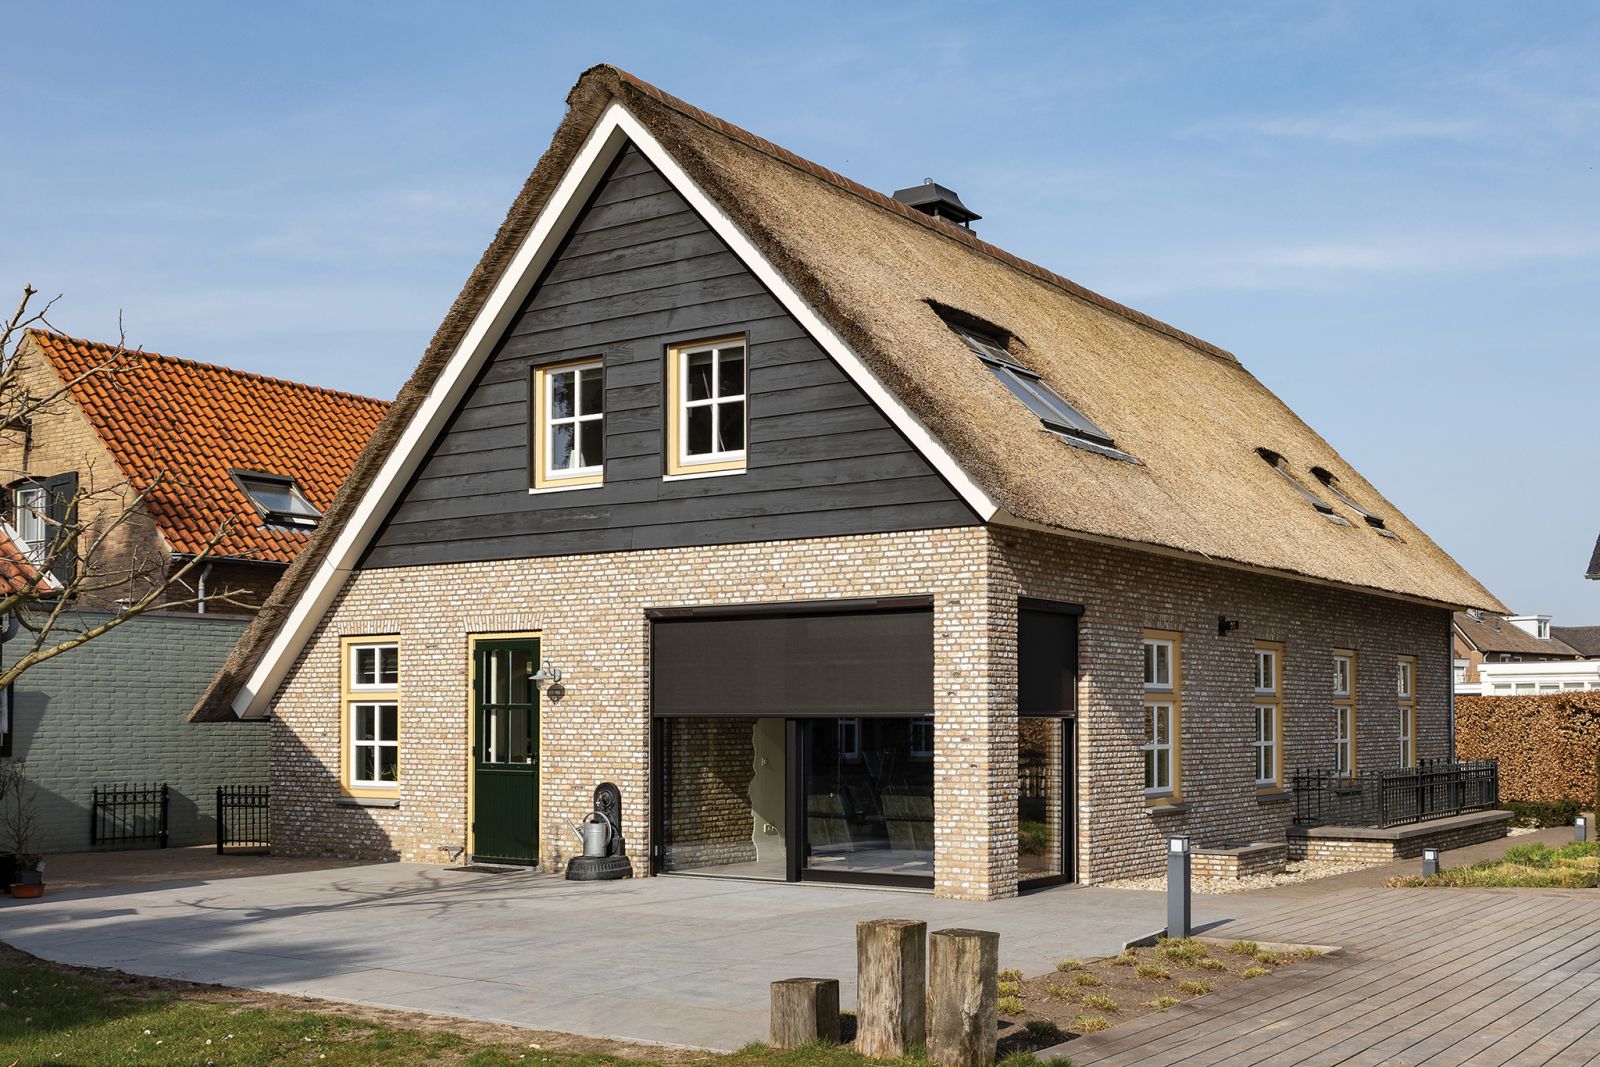 Właściciele pięknego holenderskiego domu zainwestowali w markizy zewnętrzne FAKRO VMZ Solar, które skutecznie zlikwidowały problem nadmiernego nagrzewania pomieszczeń (fot. FAKRO)